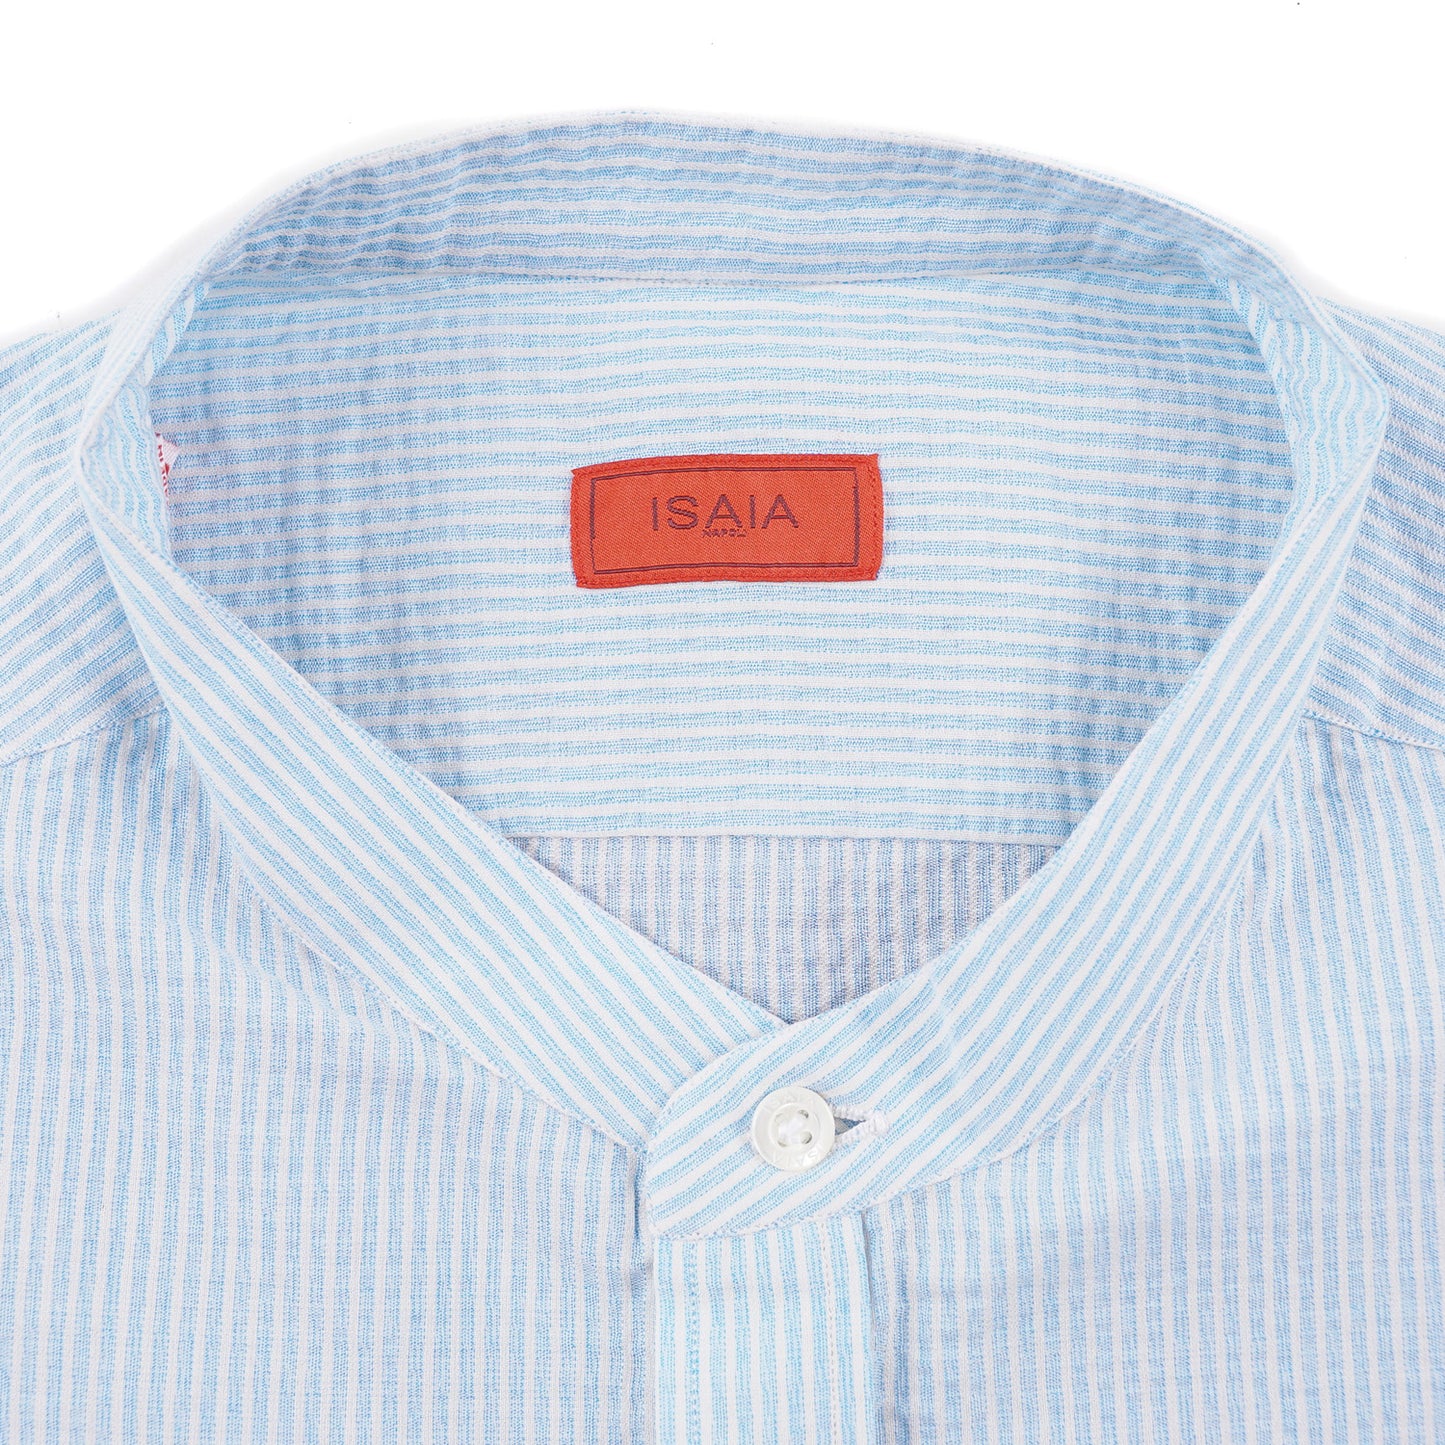 Isaia Lightweight Textured Cotton Shirt - Top Shelf Apparel